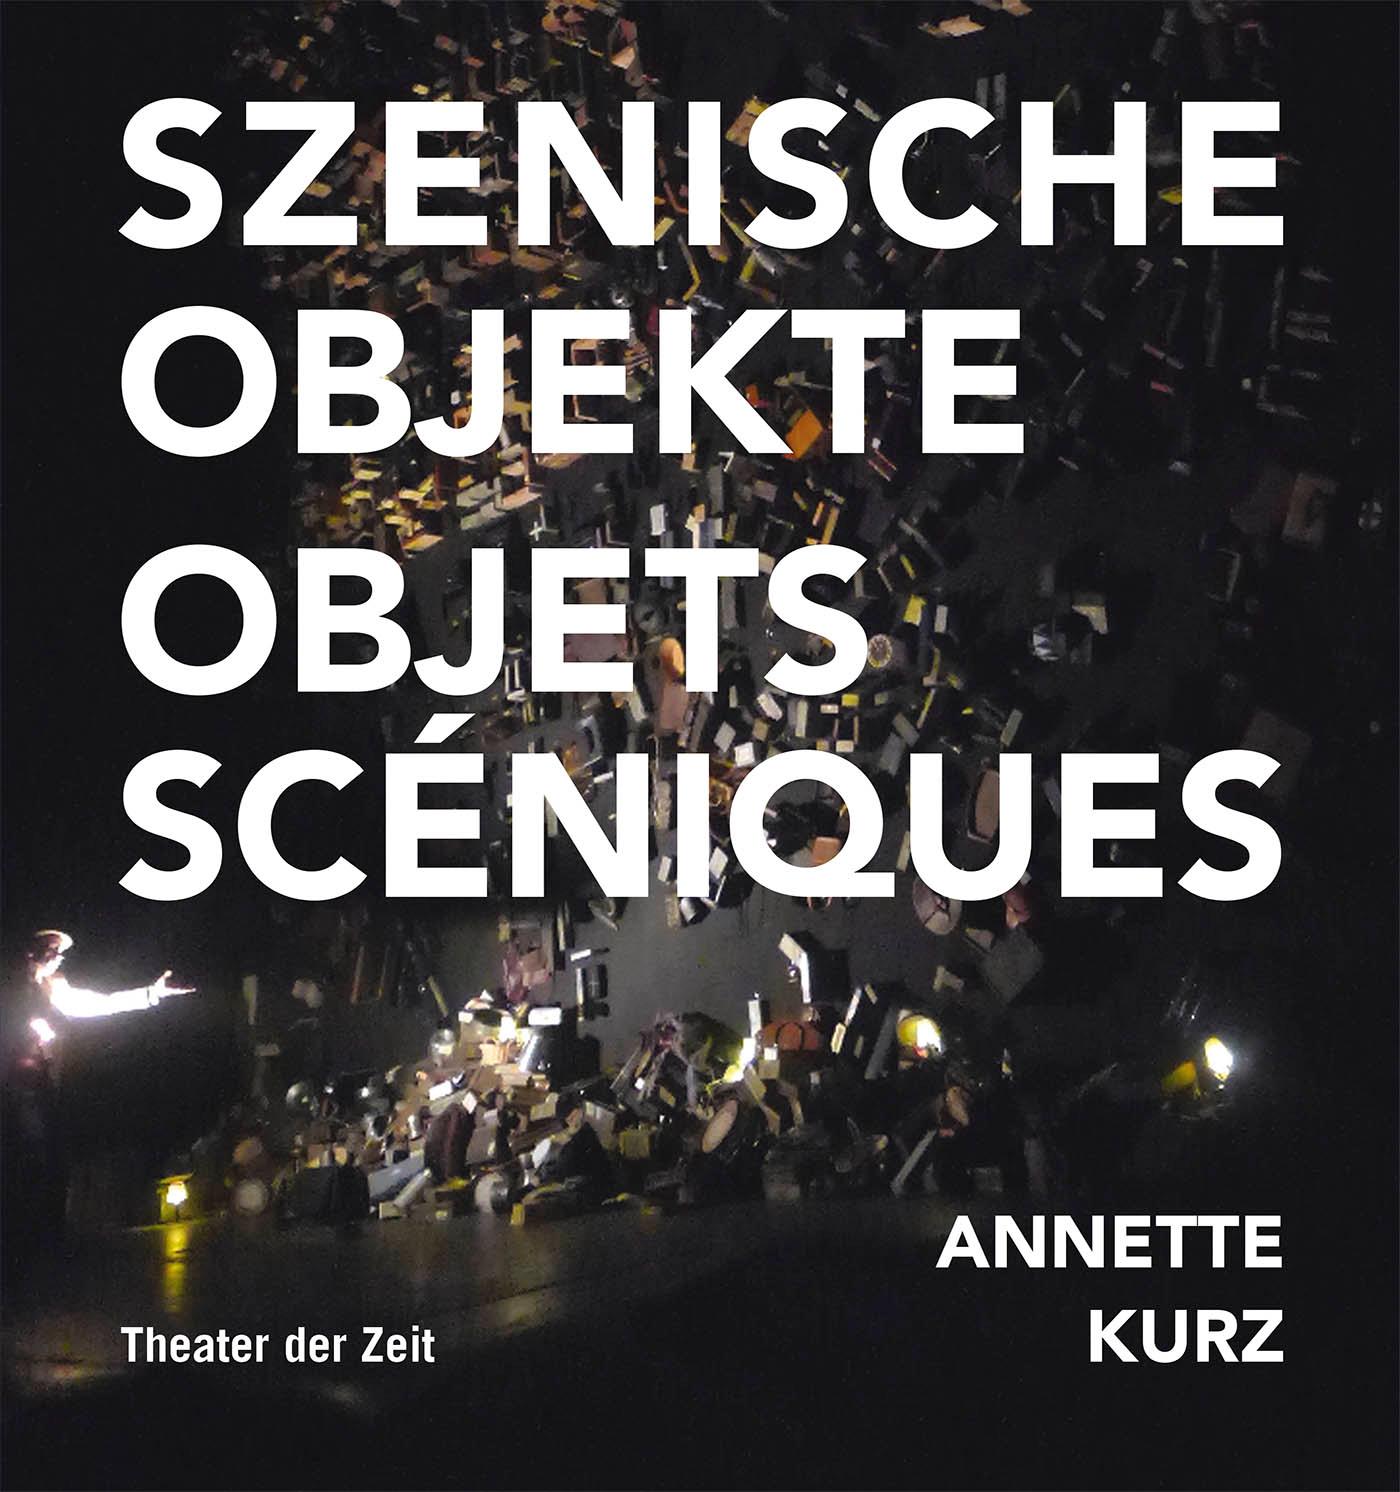 "Annette Kurz"